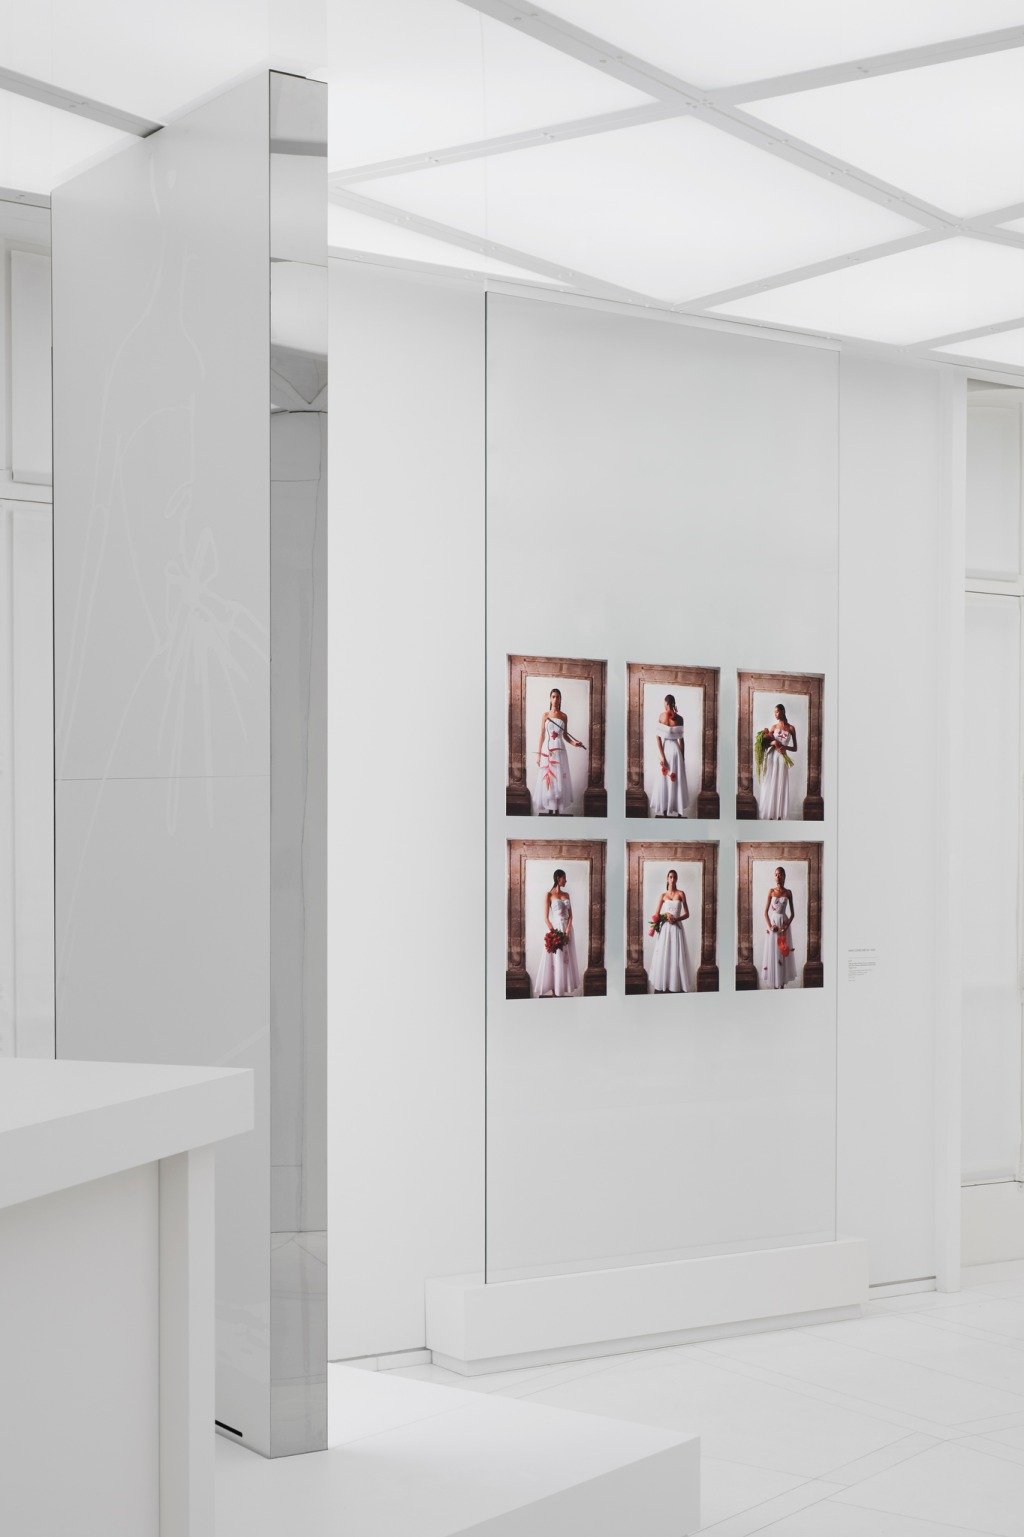 Exposição Dior Destaca a Colaboração Brilhante com Artistas Femininas